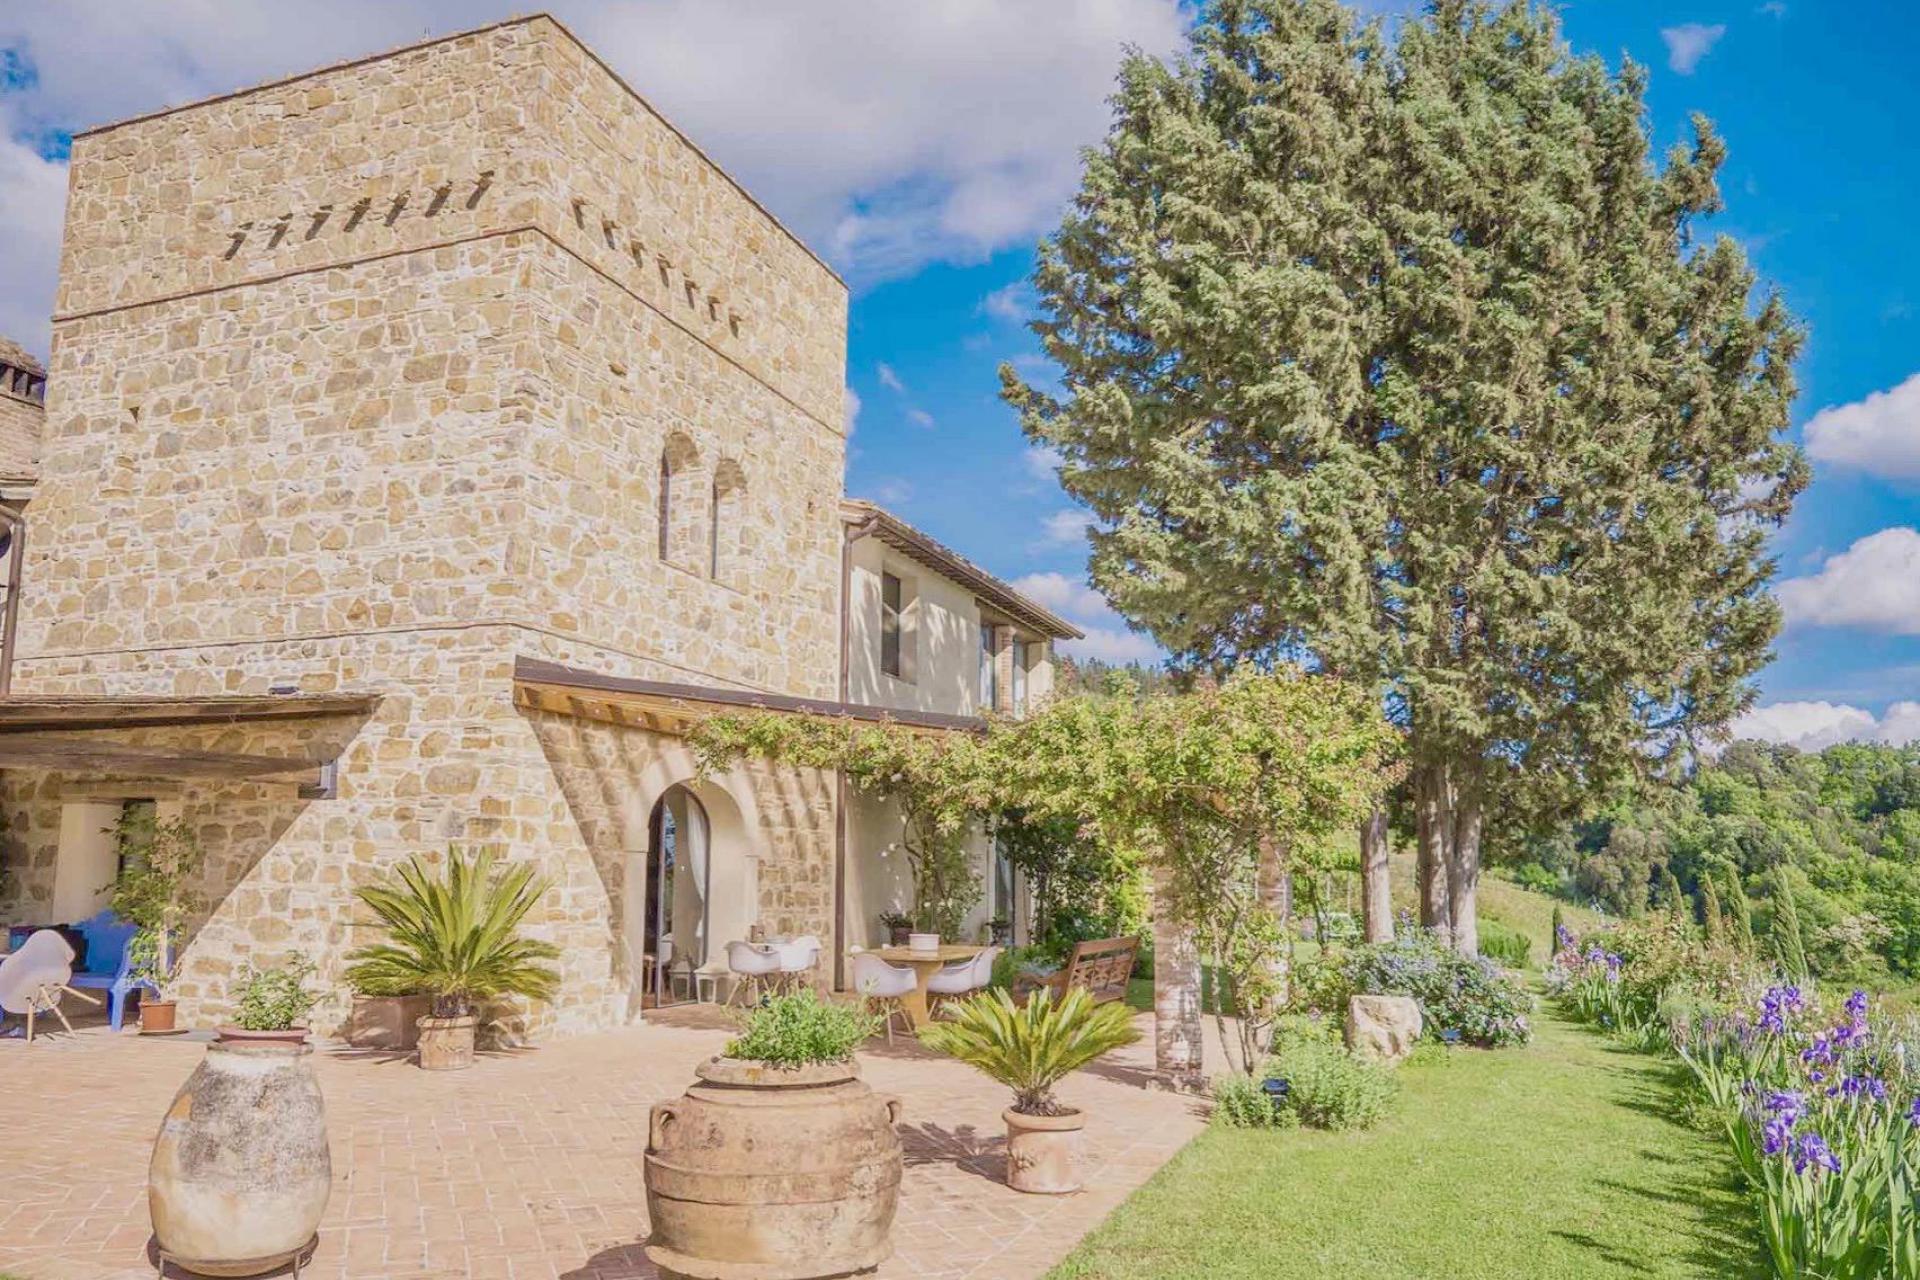 Agriturismo Toskana, FeWo oder Ferienhaus zwischen Olivenhainen und fantastischem Ausblick